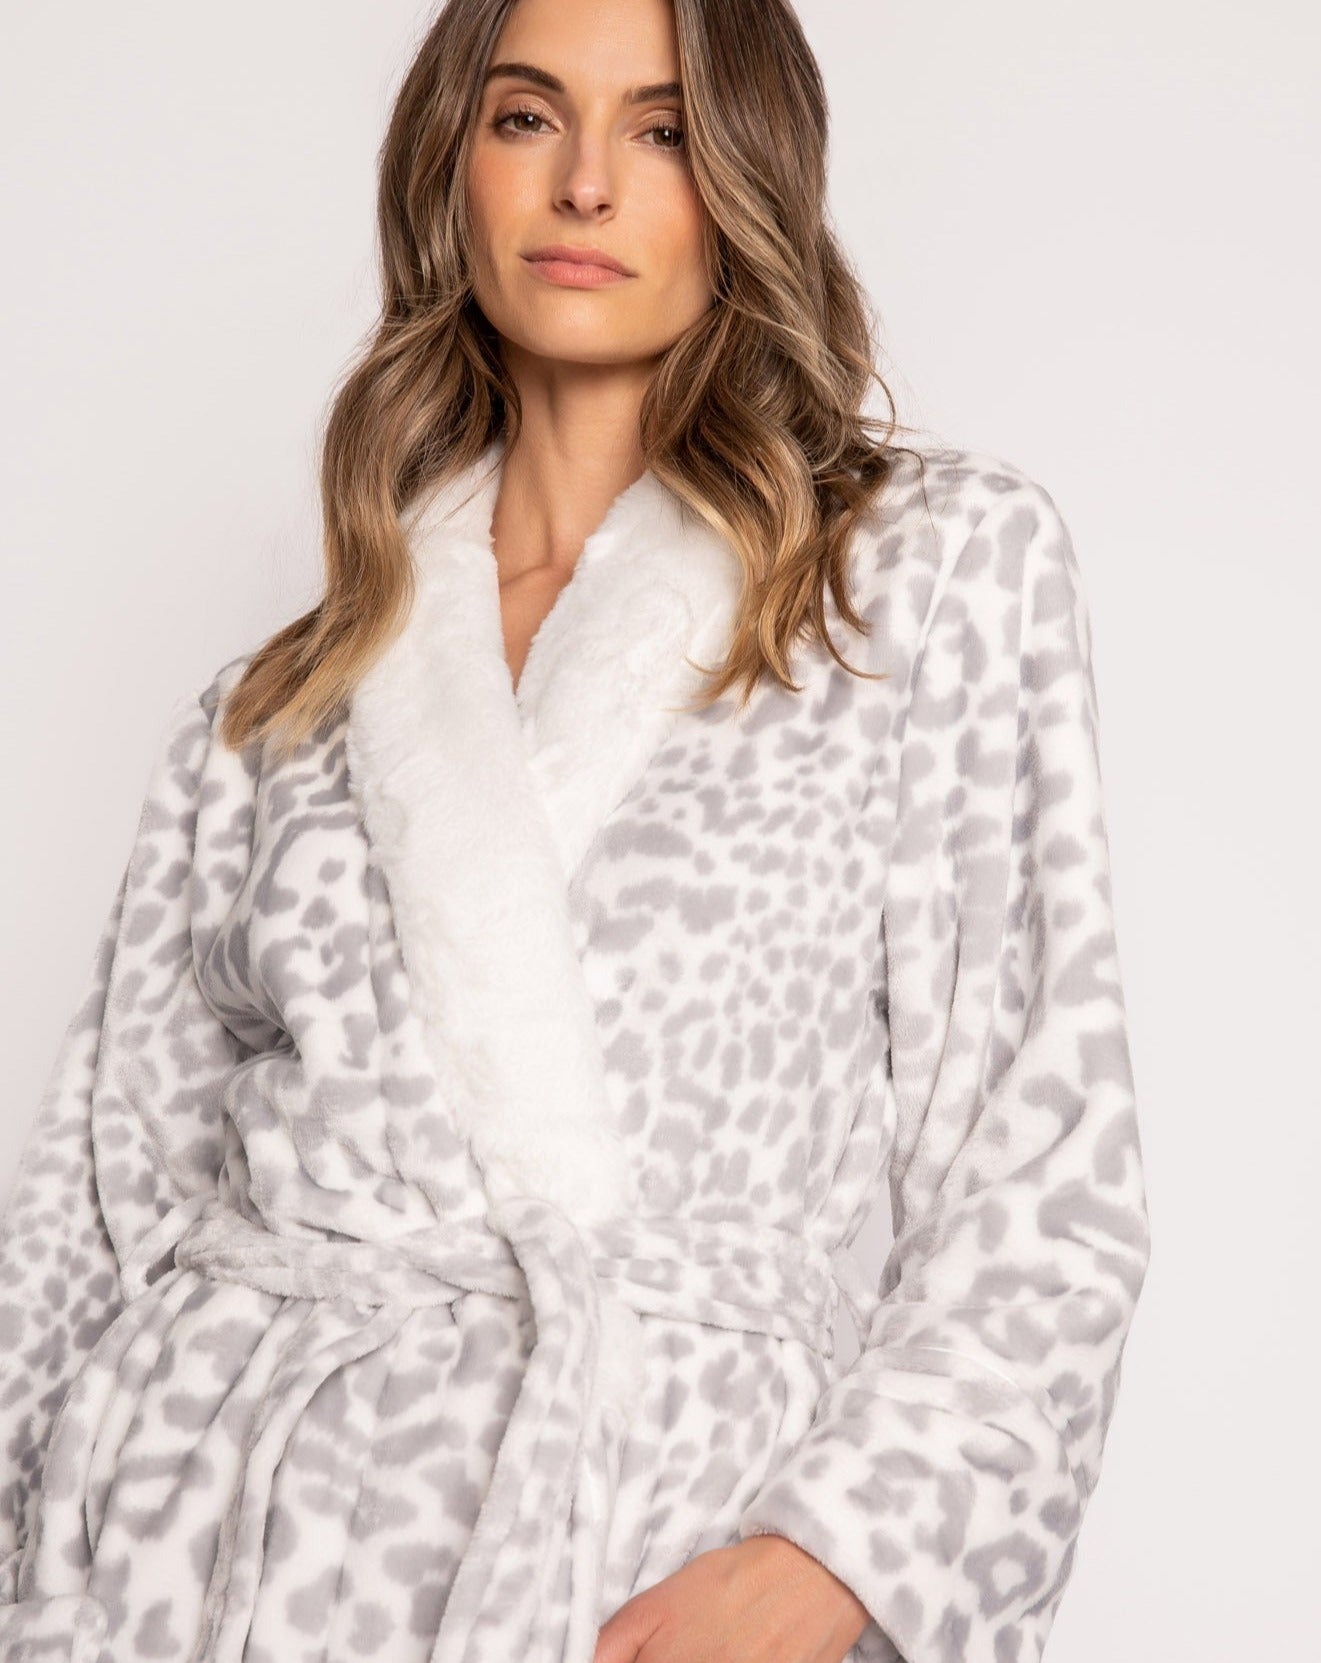 Luxe Plush Robe: Size M, L